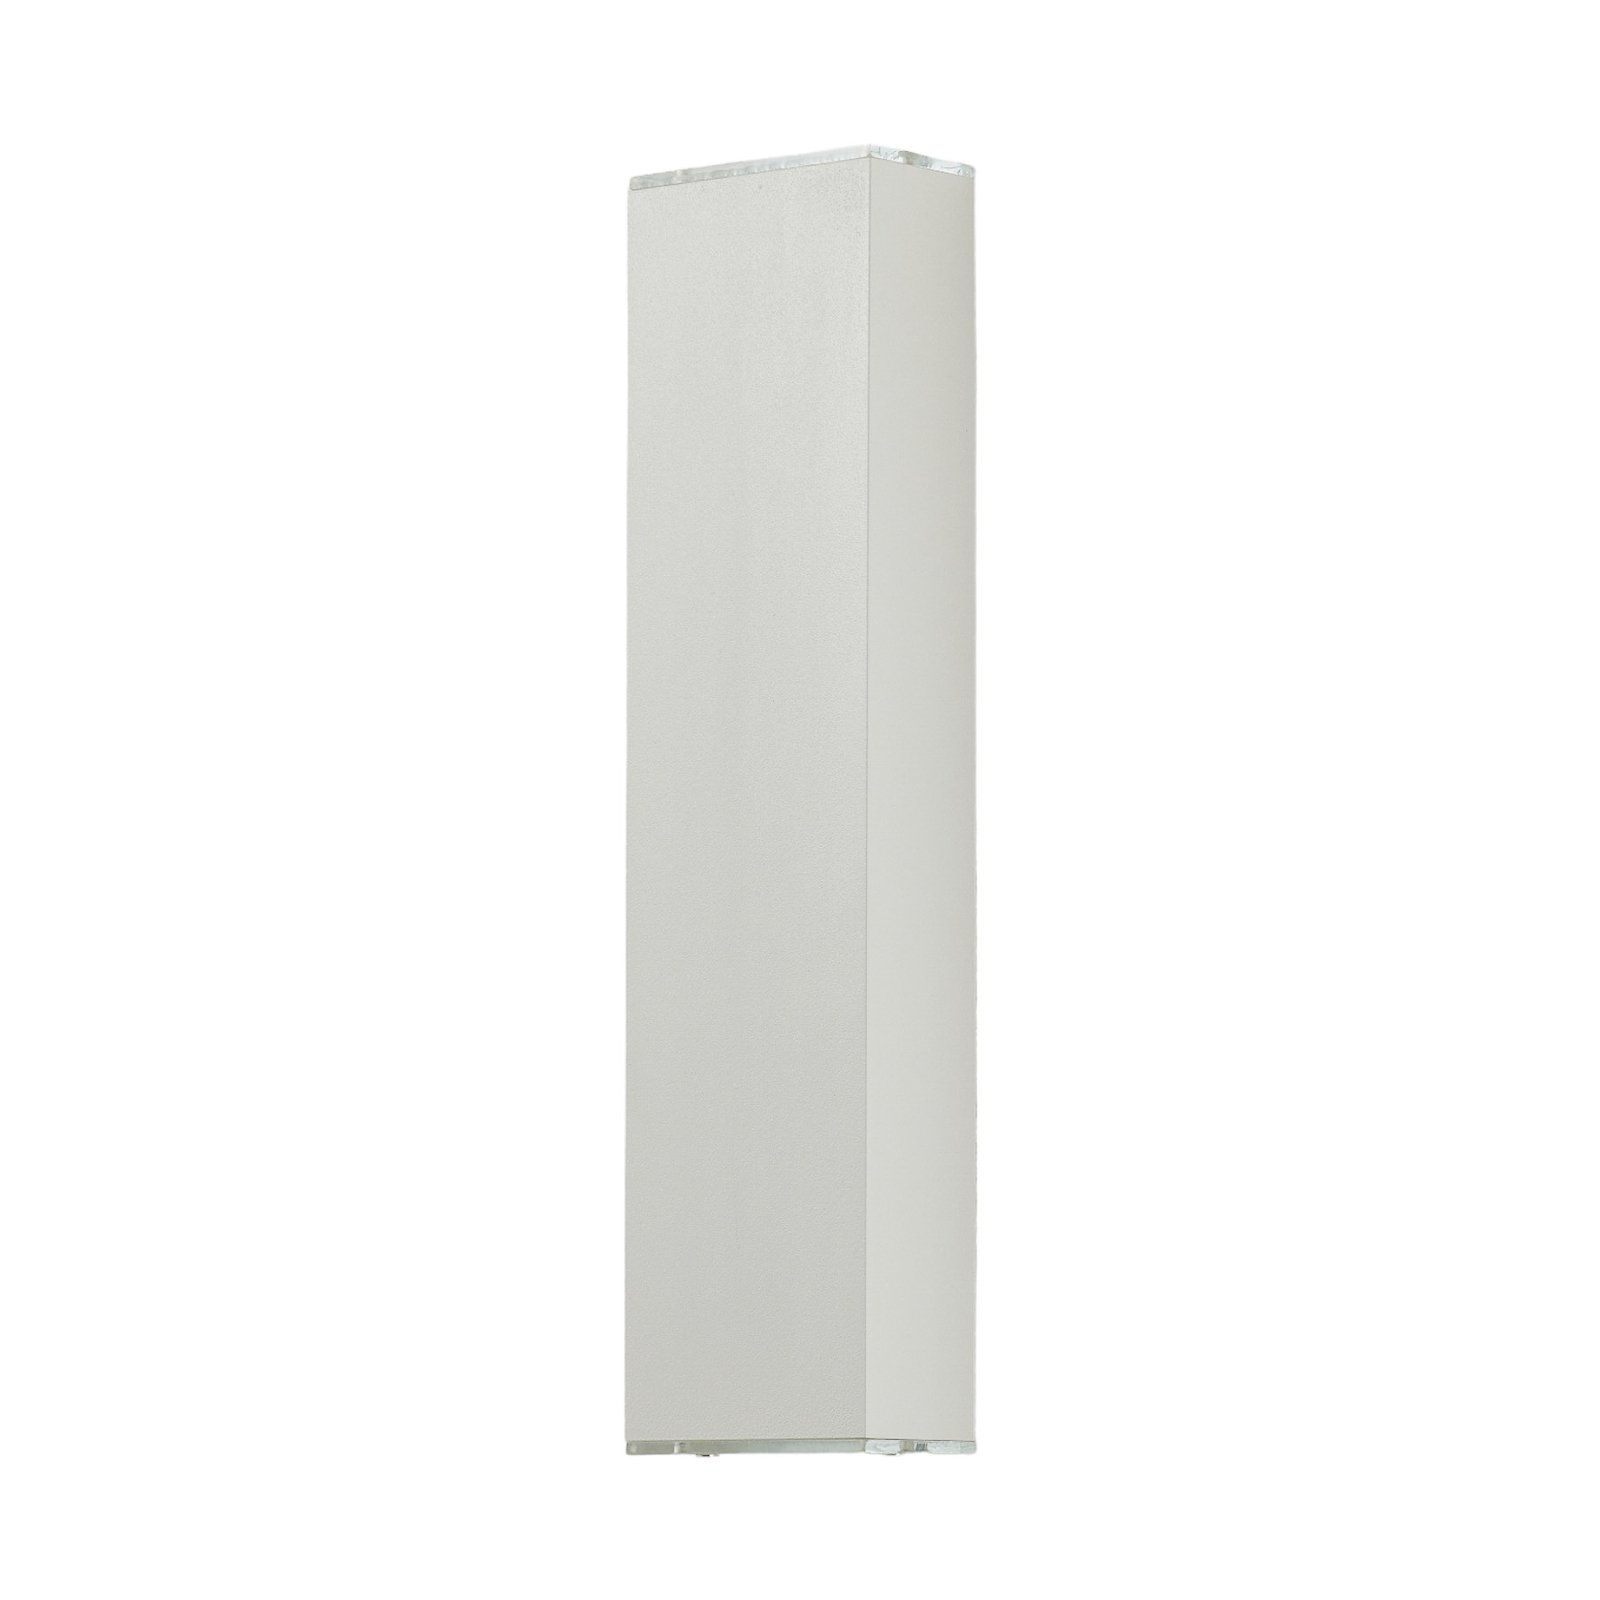 Lucande Anita LED wall light white height 36 cm